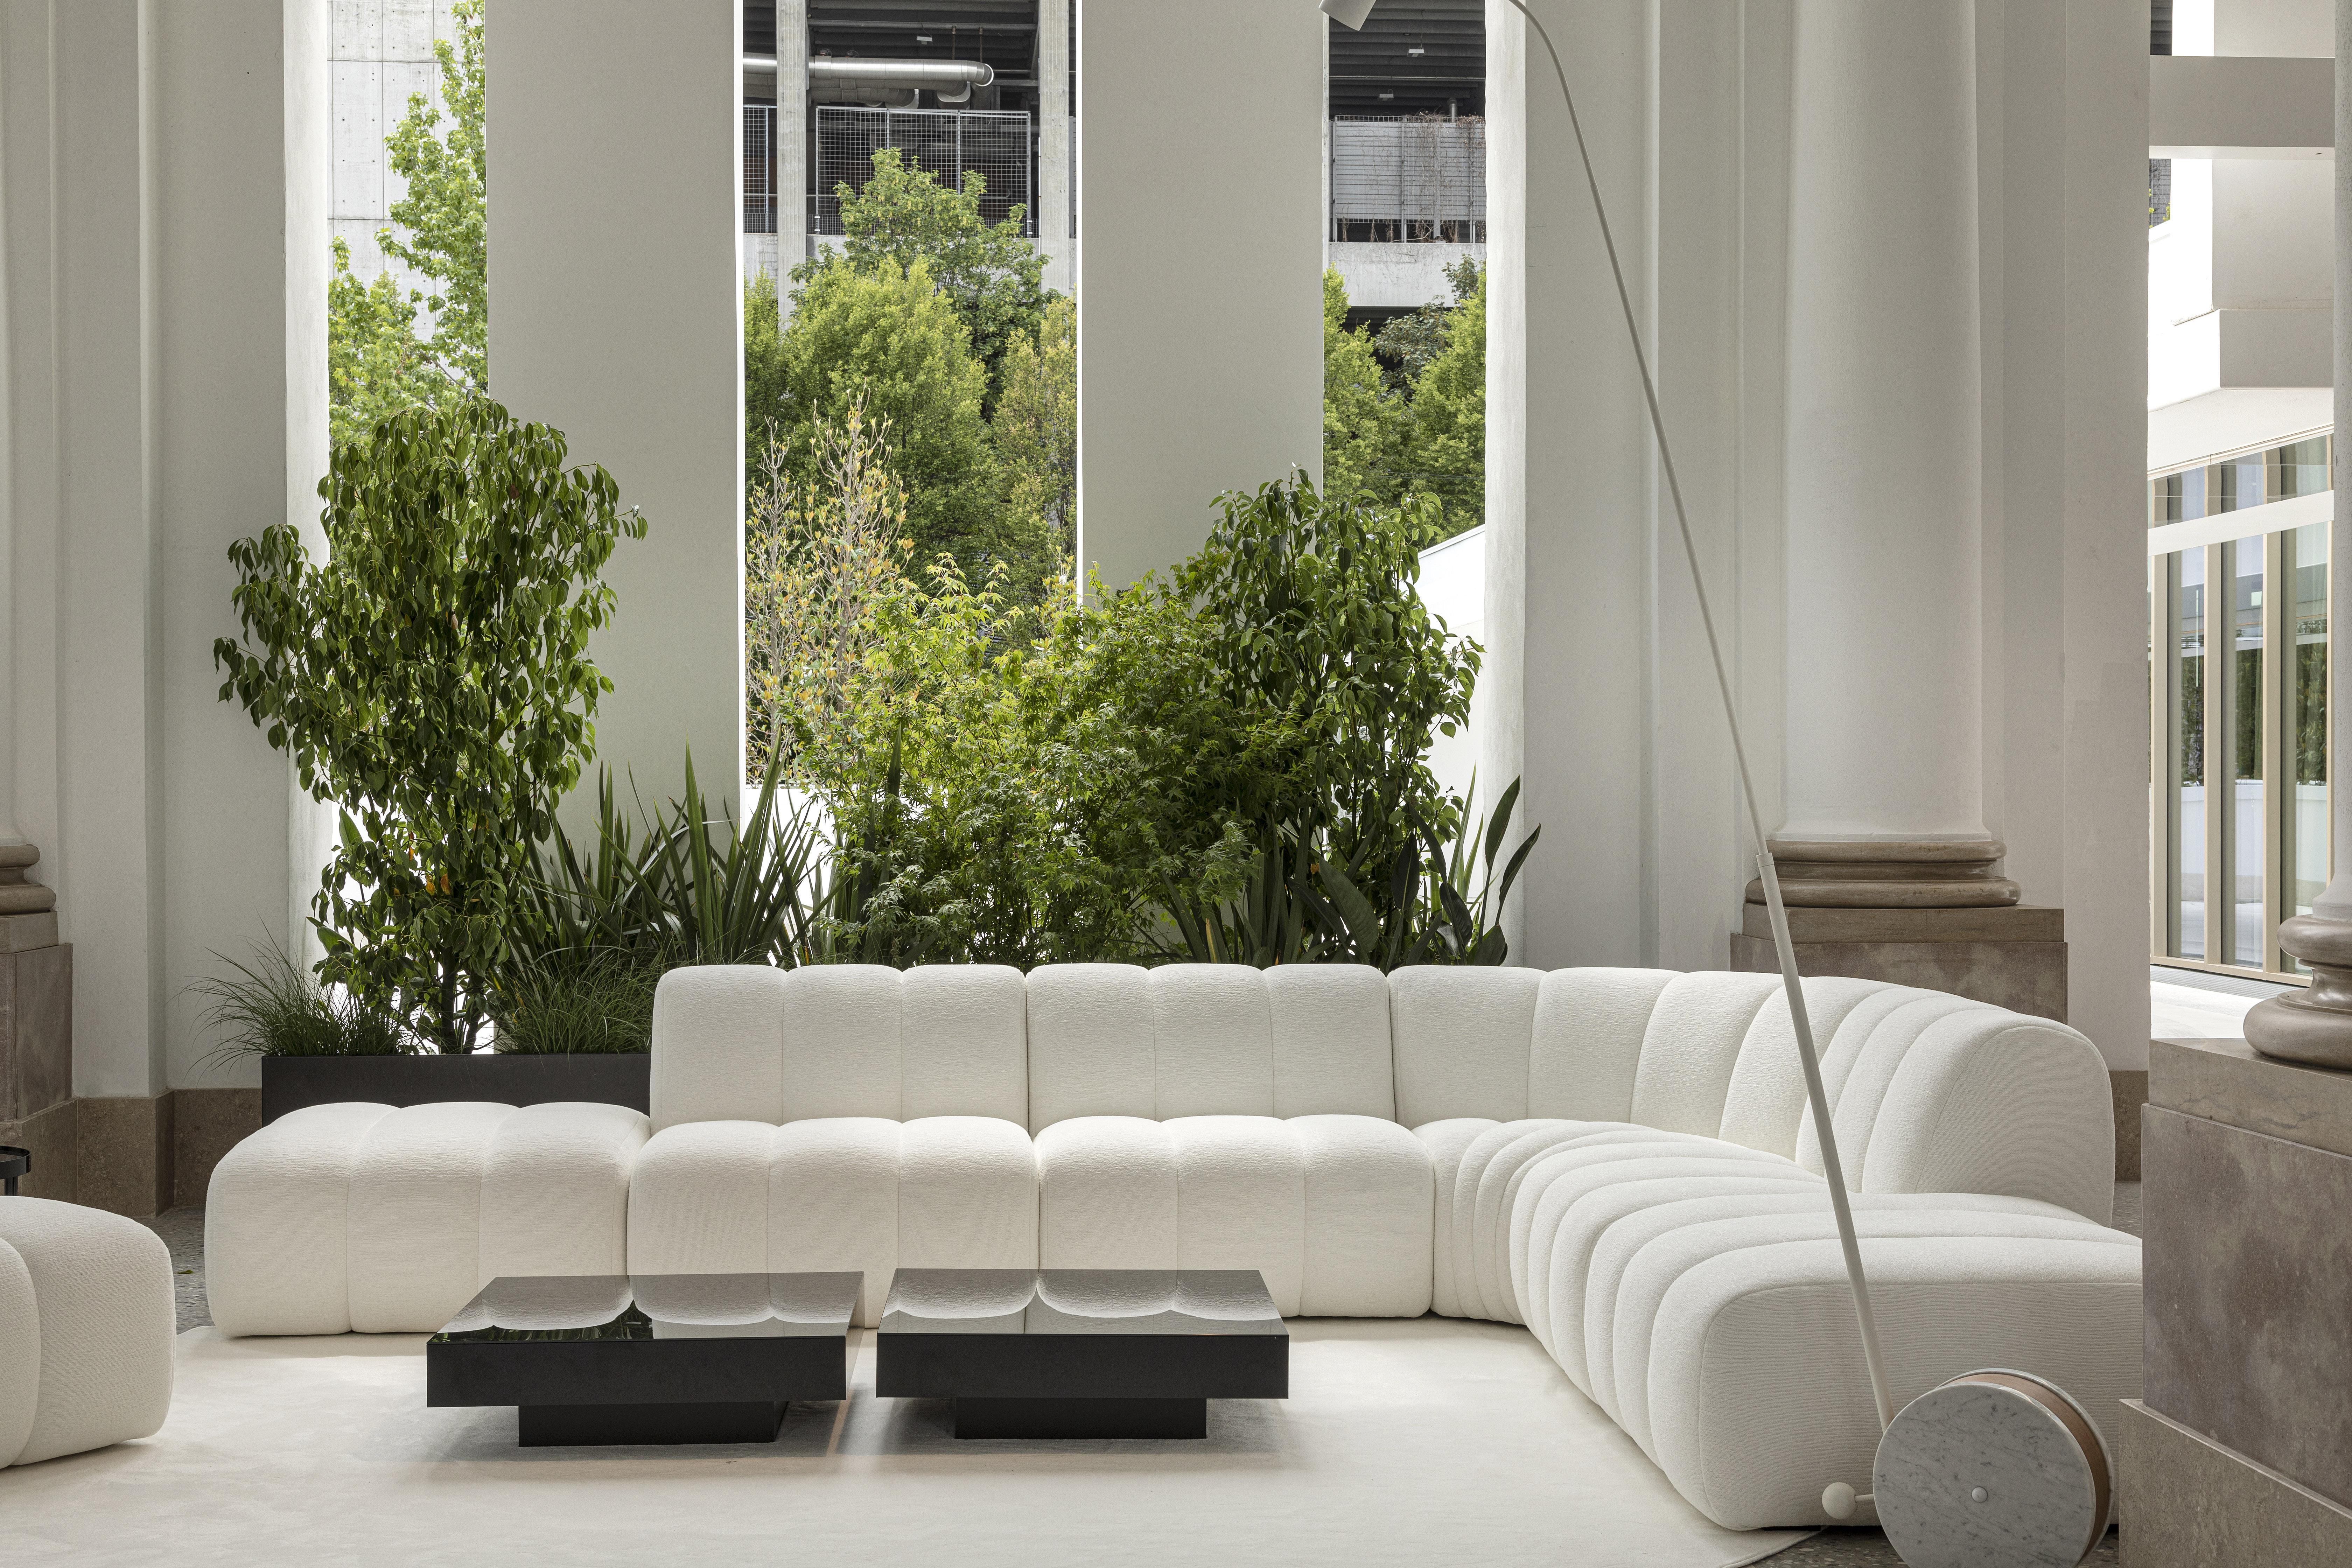 Contemporary DACCAPO modular sofa by Legame Italia, in white fabric. Basic module. For Sale